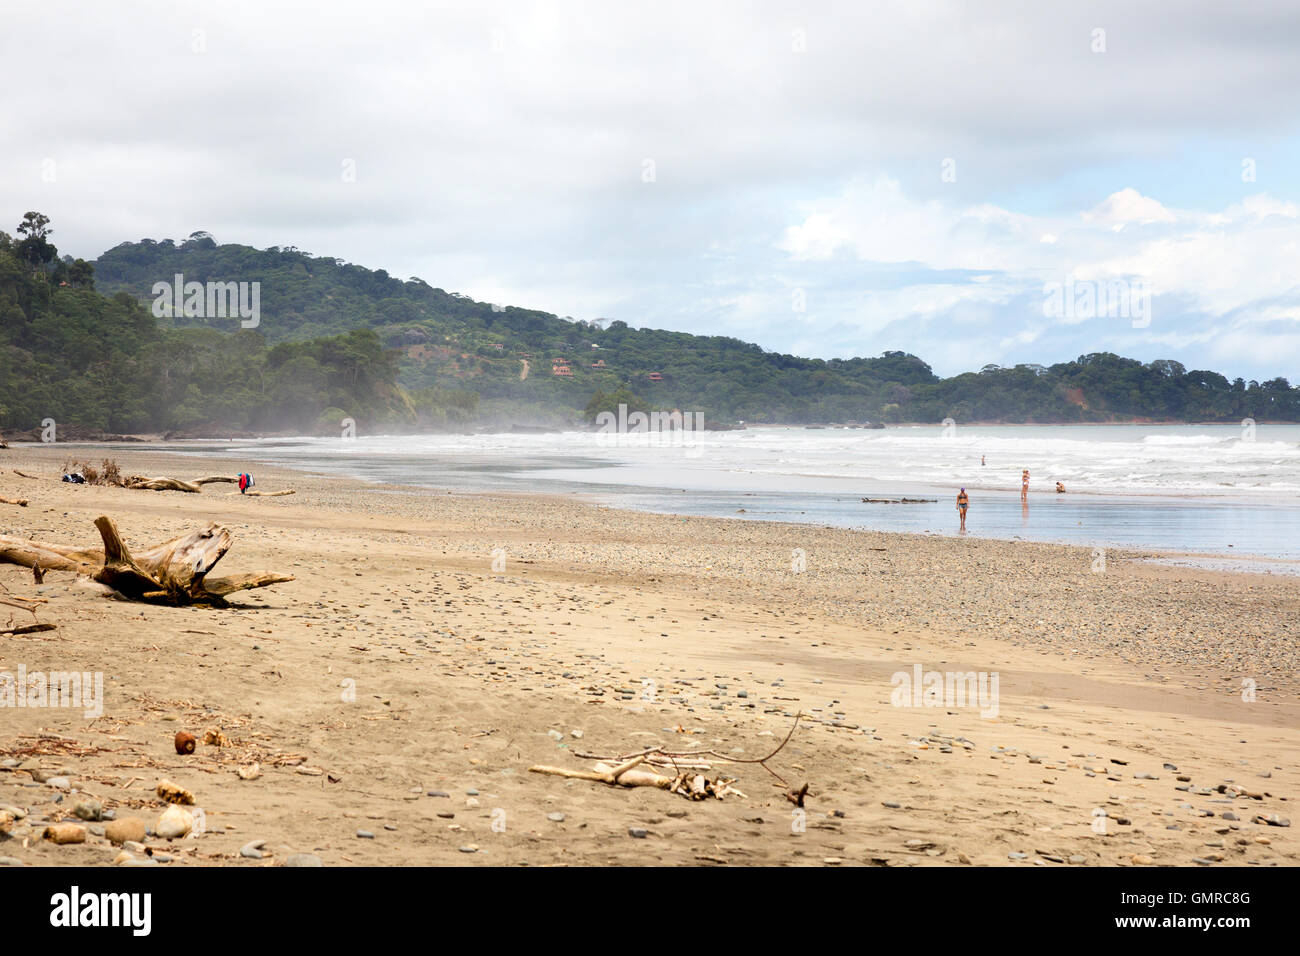 La plage de dominical, côte Pacifique, Costa Rica, Amérique centrale Banque D'Images